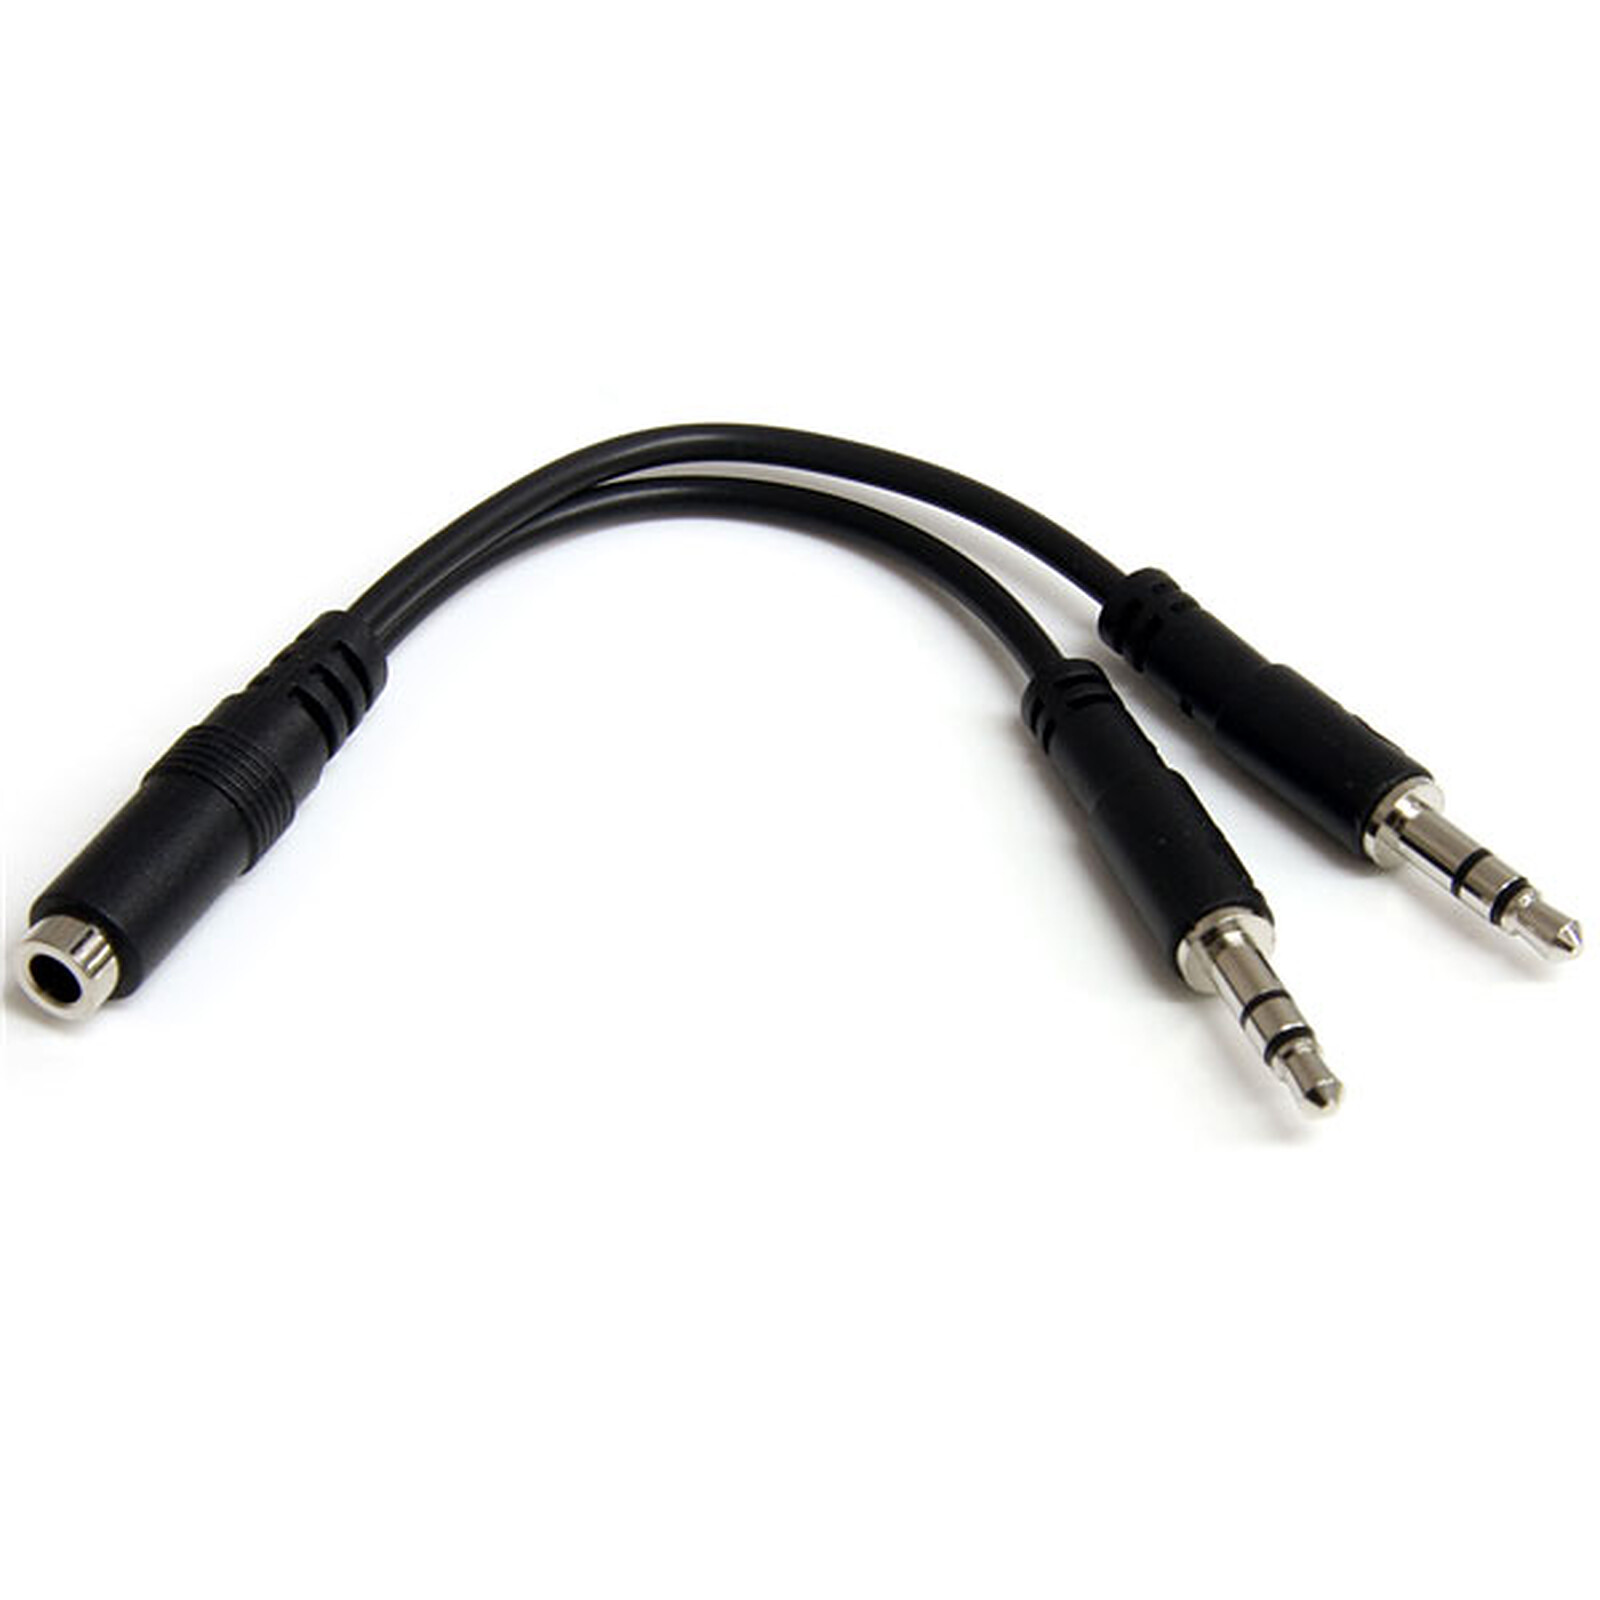 H HILABEE Cavo Jack Per Convertitore Audio USB AUX Femmina Da 3,5 Mm A 3,5 Mm Maschio